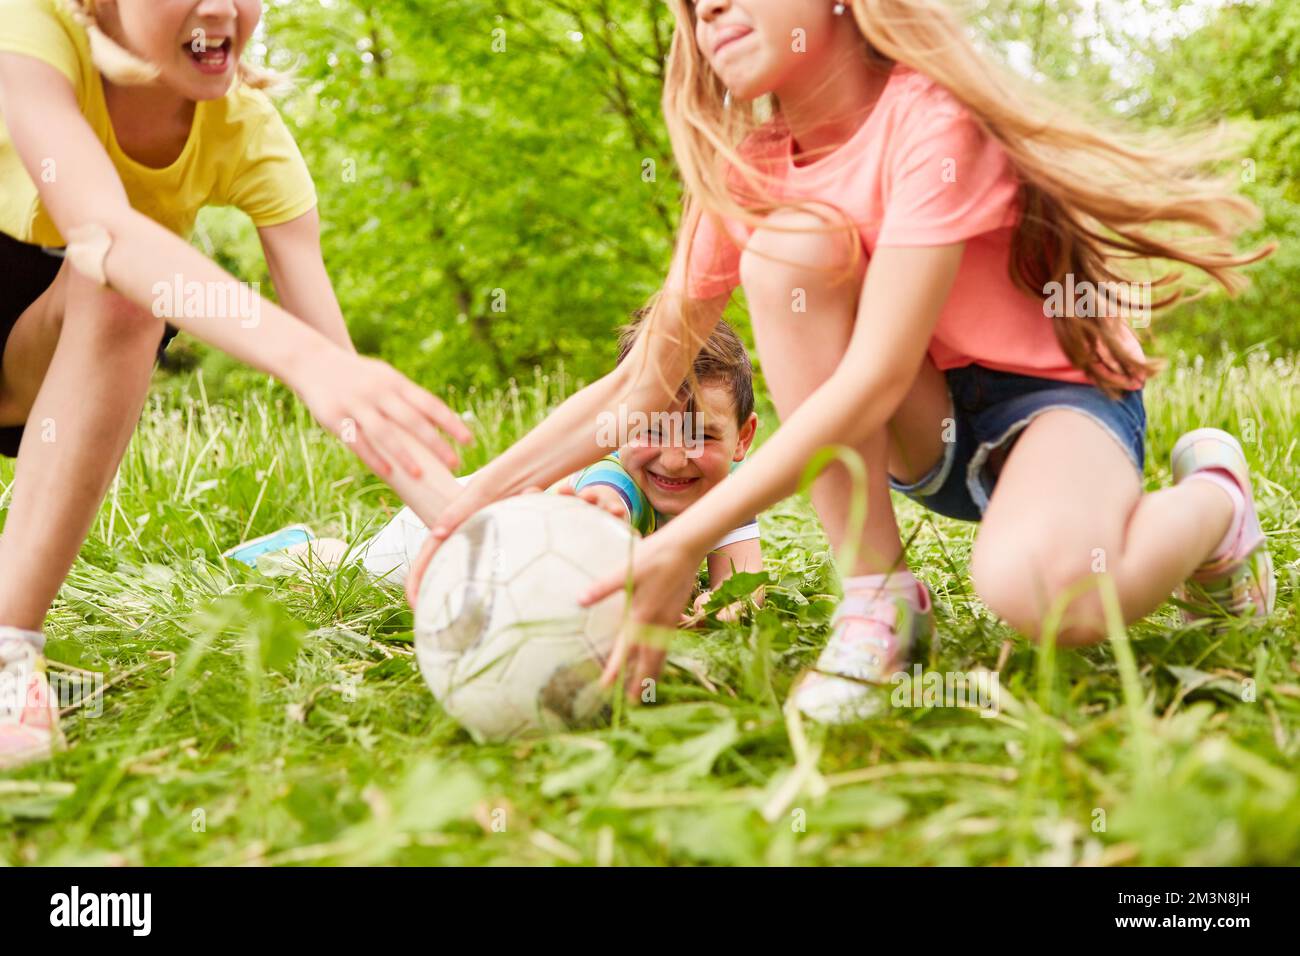 Mädchen, die mit einem männlichen Freund während des Wettkampfs im Park Fußball spielen Stockfoto